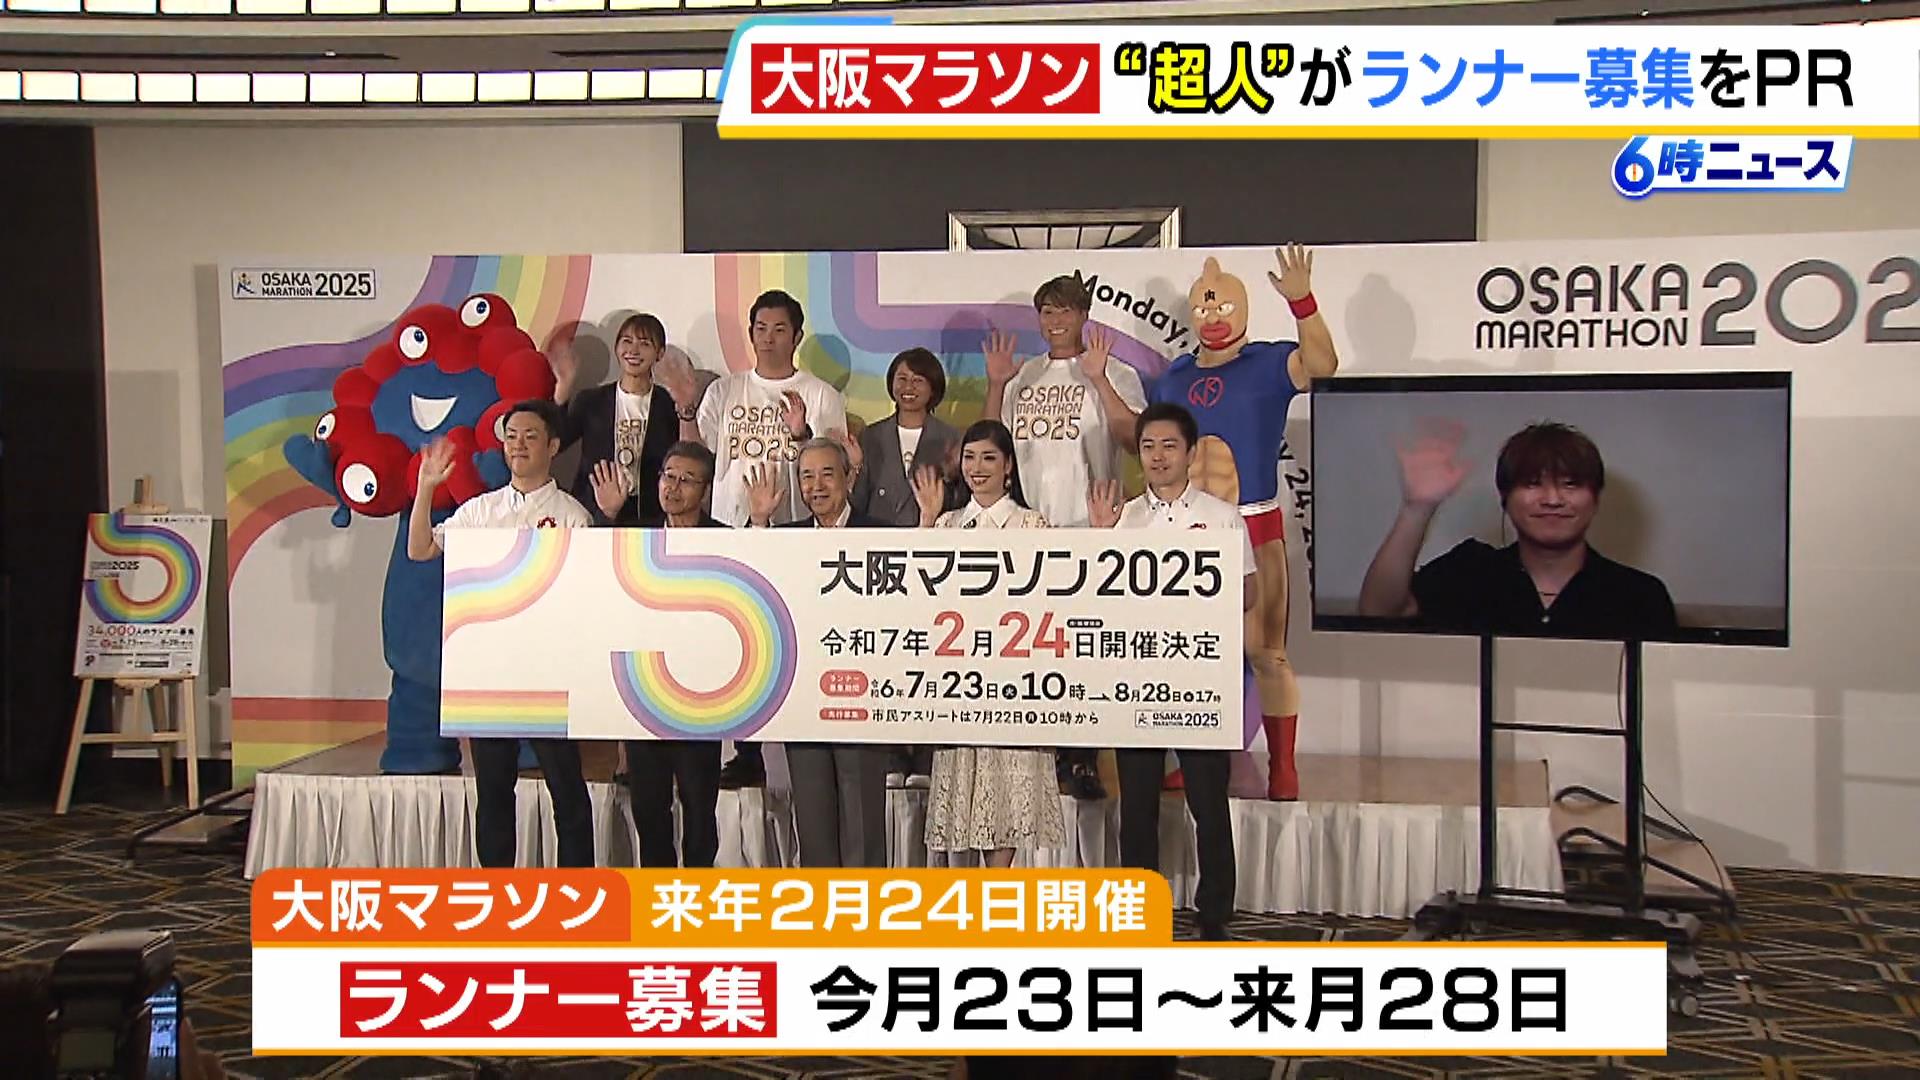 “超人”が大阪マラソンの『スペシャルサポーター』に就任　糸井嘉男さん「頑張って挑戦していきたい」